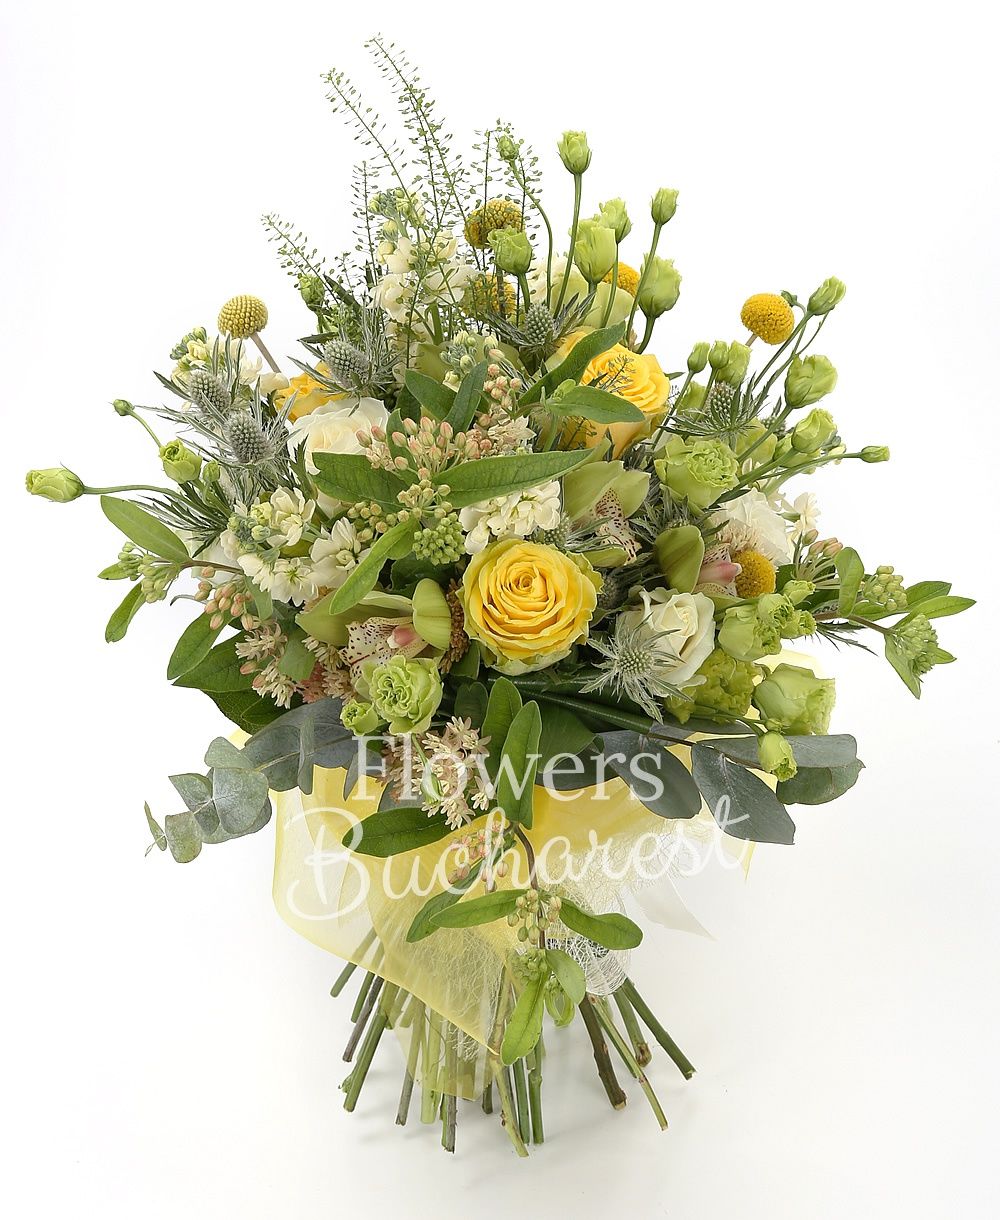 5 yellow craspedia, 3 white roses, 3 yellow roses, 5 green lisianthus, 5 white matthiola, 3 eryngium, green cymbidium, greenery